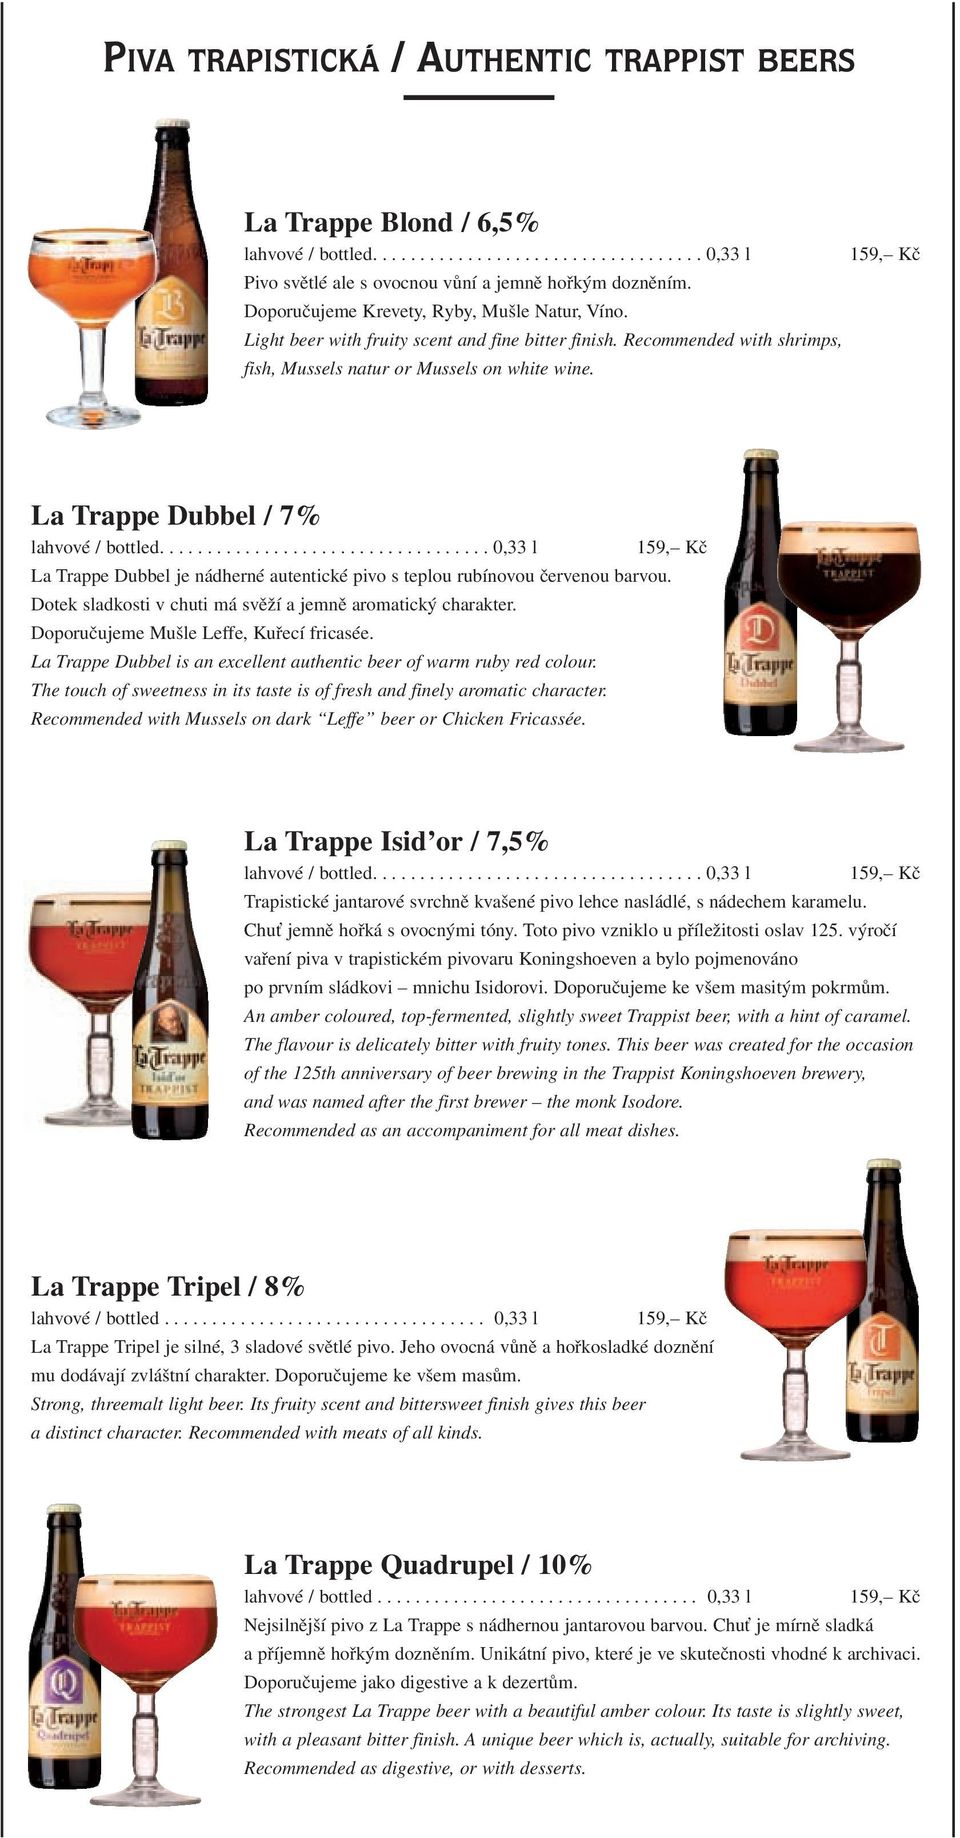 La Trappe Dubbel / 7% La Trappe Dubbel je nádherné autentické pivo s teplou rubínovou červenou barvou. Dotek sladkosti v chuti má svěží a jemně aromatický charakter.